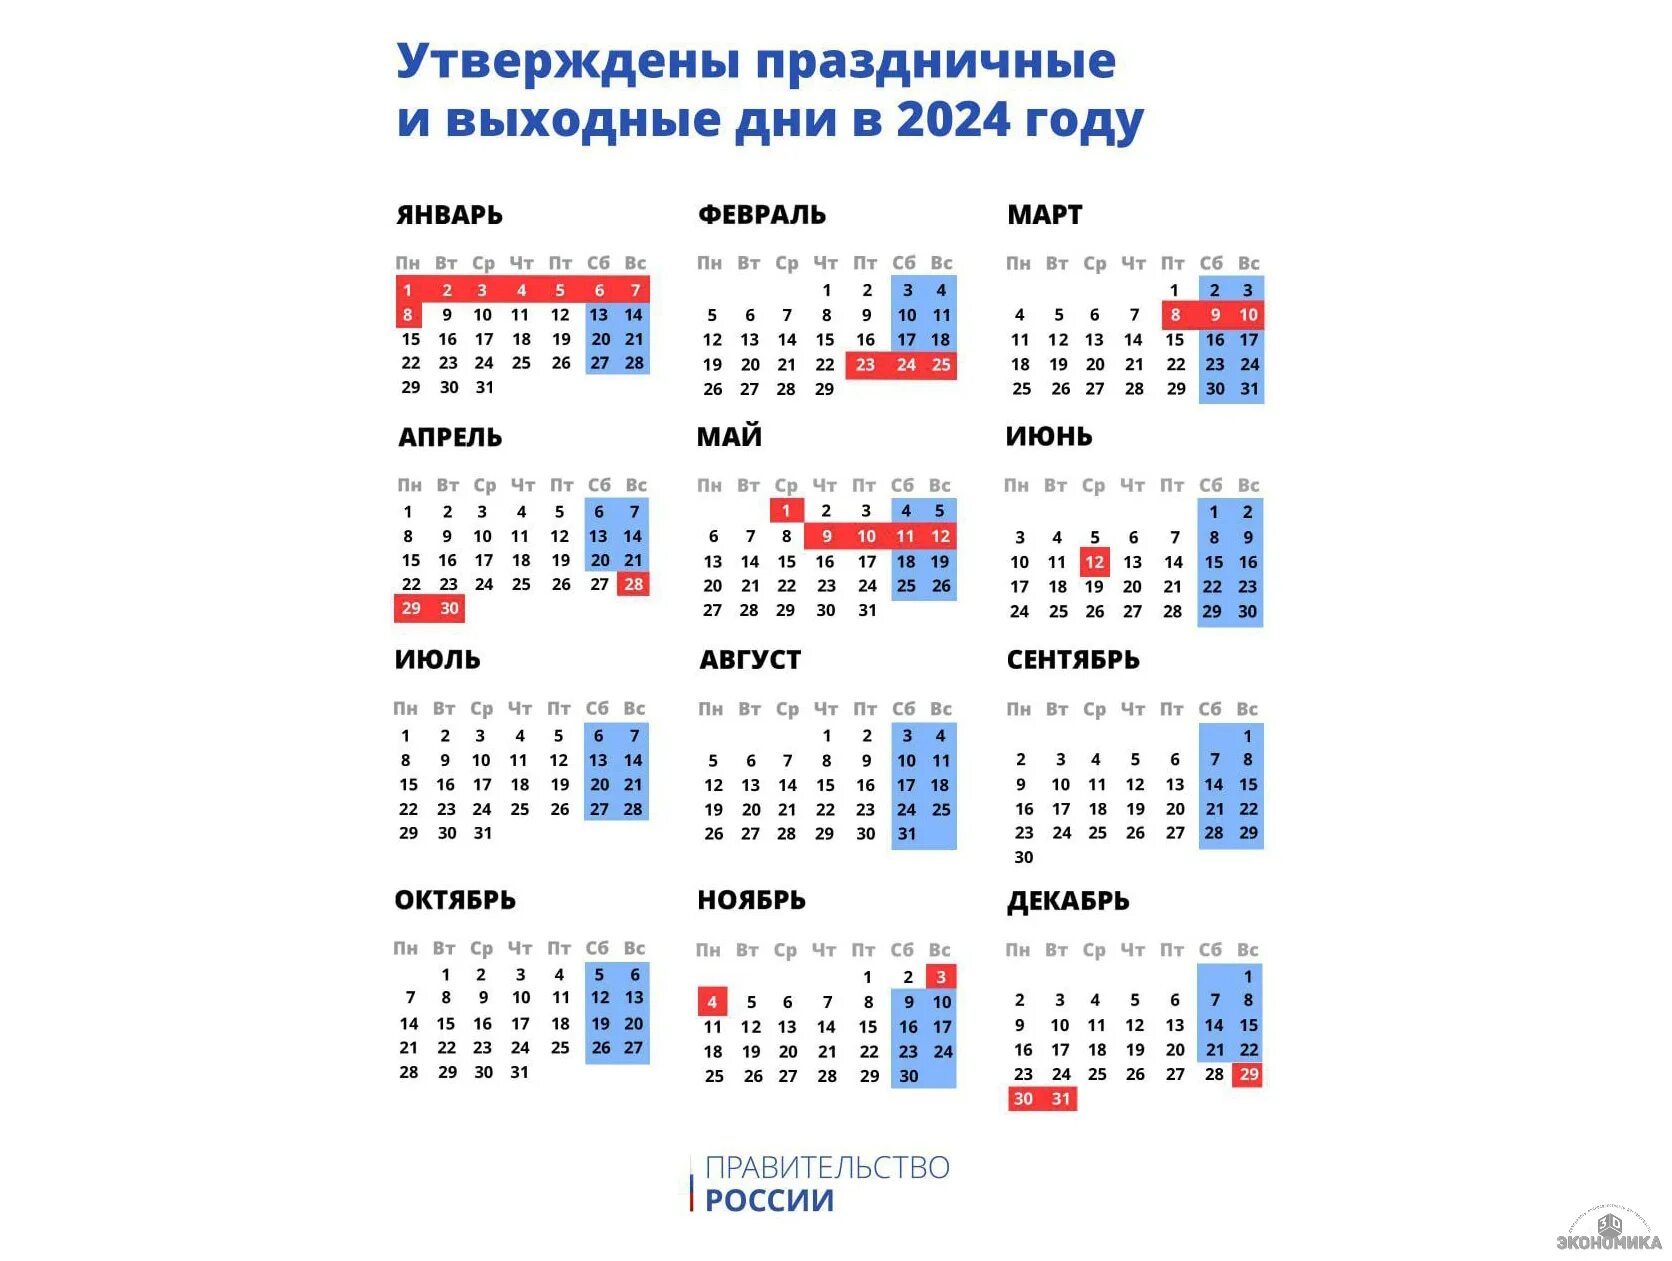 Официальные праздники в мае 2024 года. Календарь выходных и праздничных на этот год. Календарь праздничных дней 2024. DS[jlyst LYB D hjcbb d 2024 ujle. Выходные и праздничные дни в 2024 году в России.